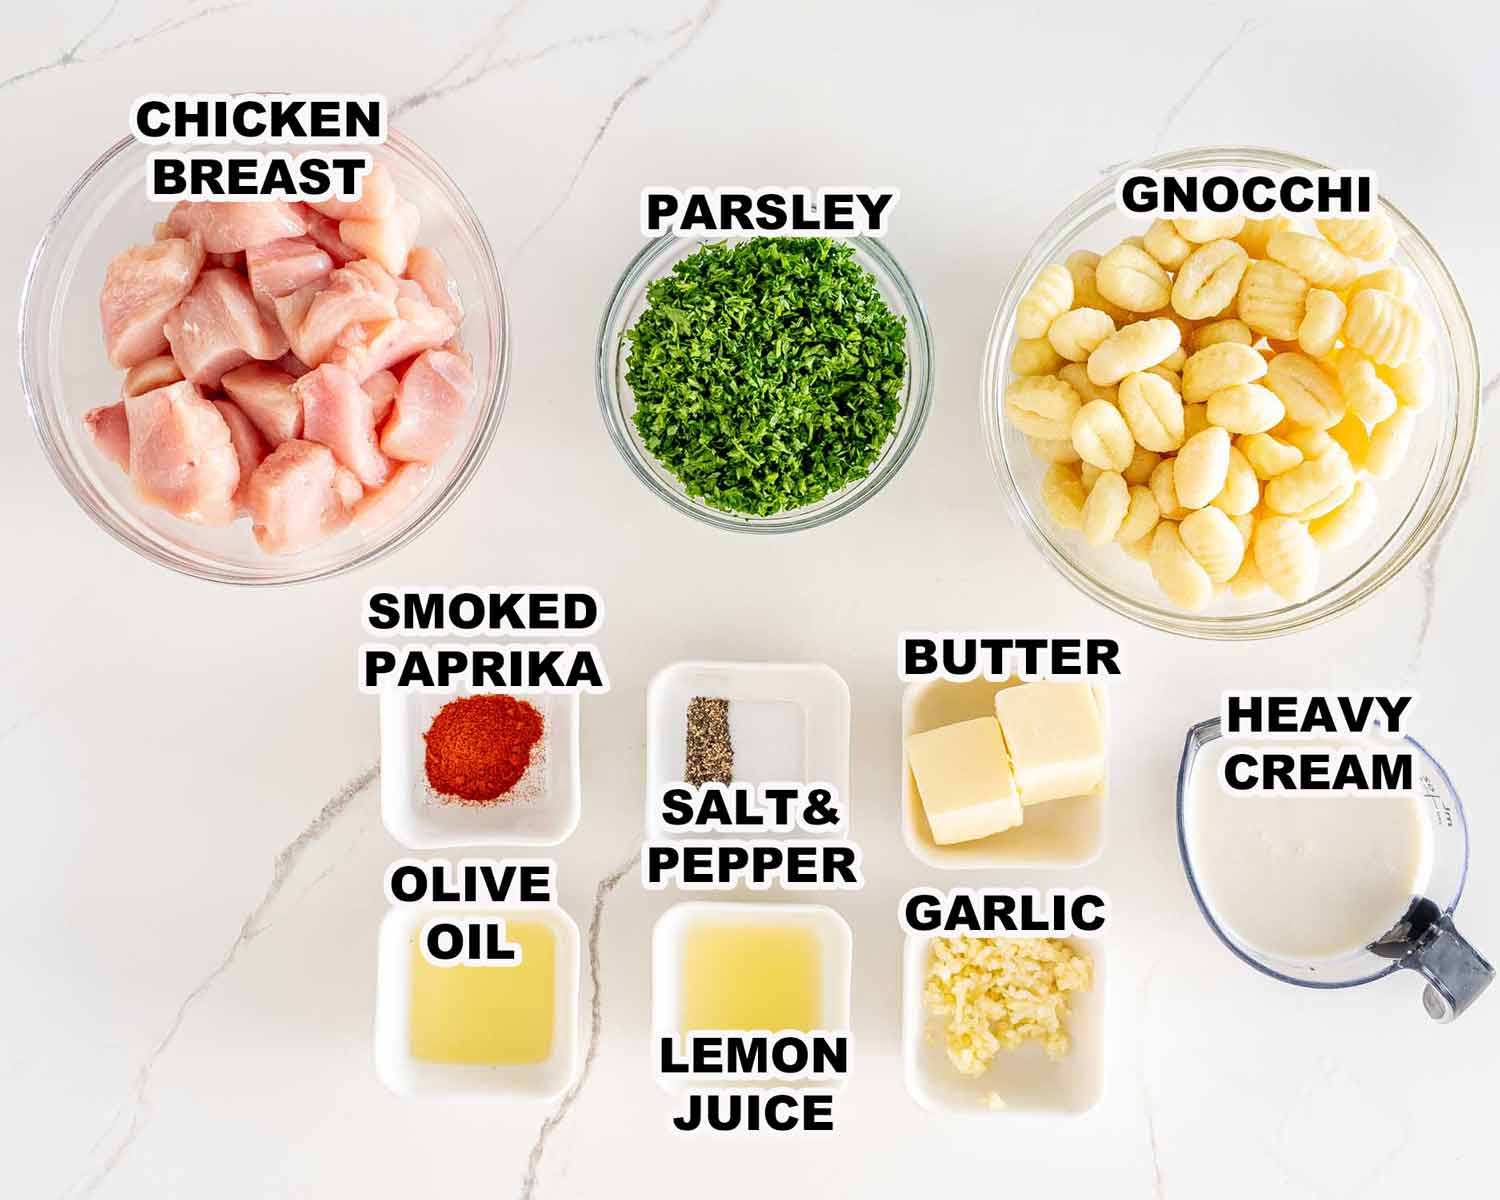 ingredients needed to make garlic butter chicken gnocchi.